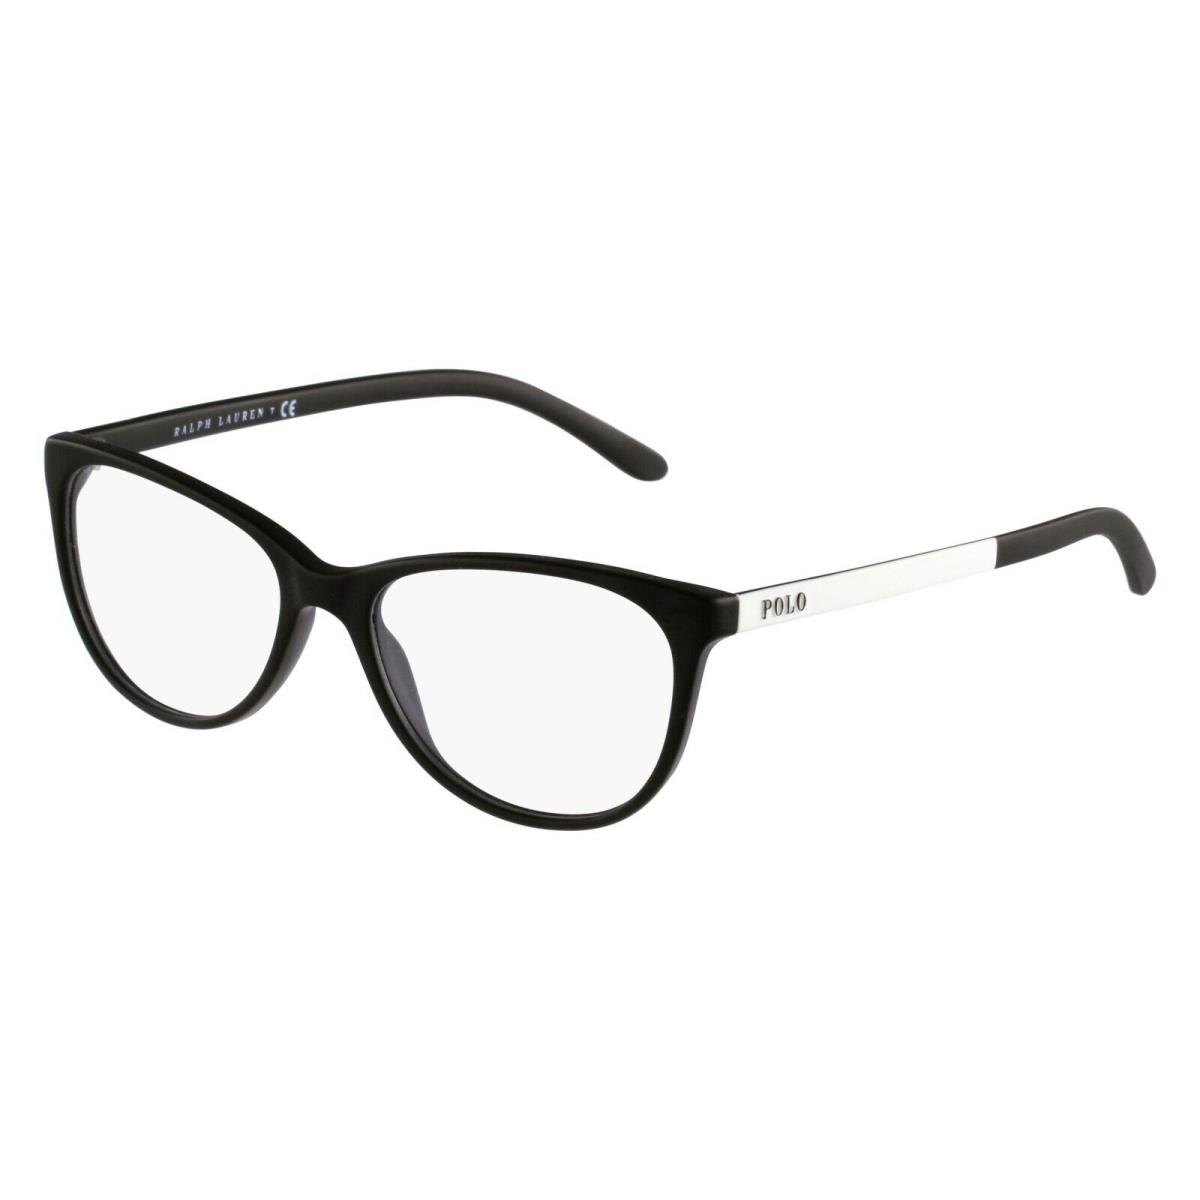 Polo Ralph Lauren PH 2130 Matte Black 5514 Plastic Eyeglasses Frame 55-16-145 RX - Black , Matte Black Frame, Clear Lens